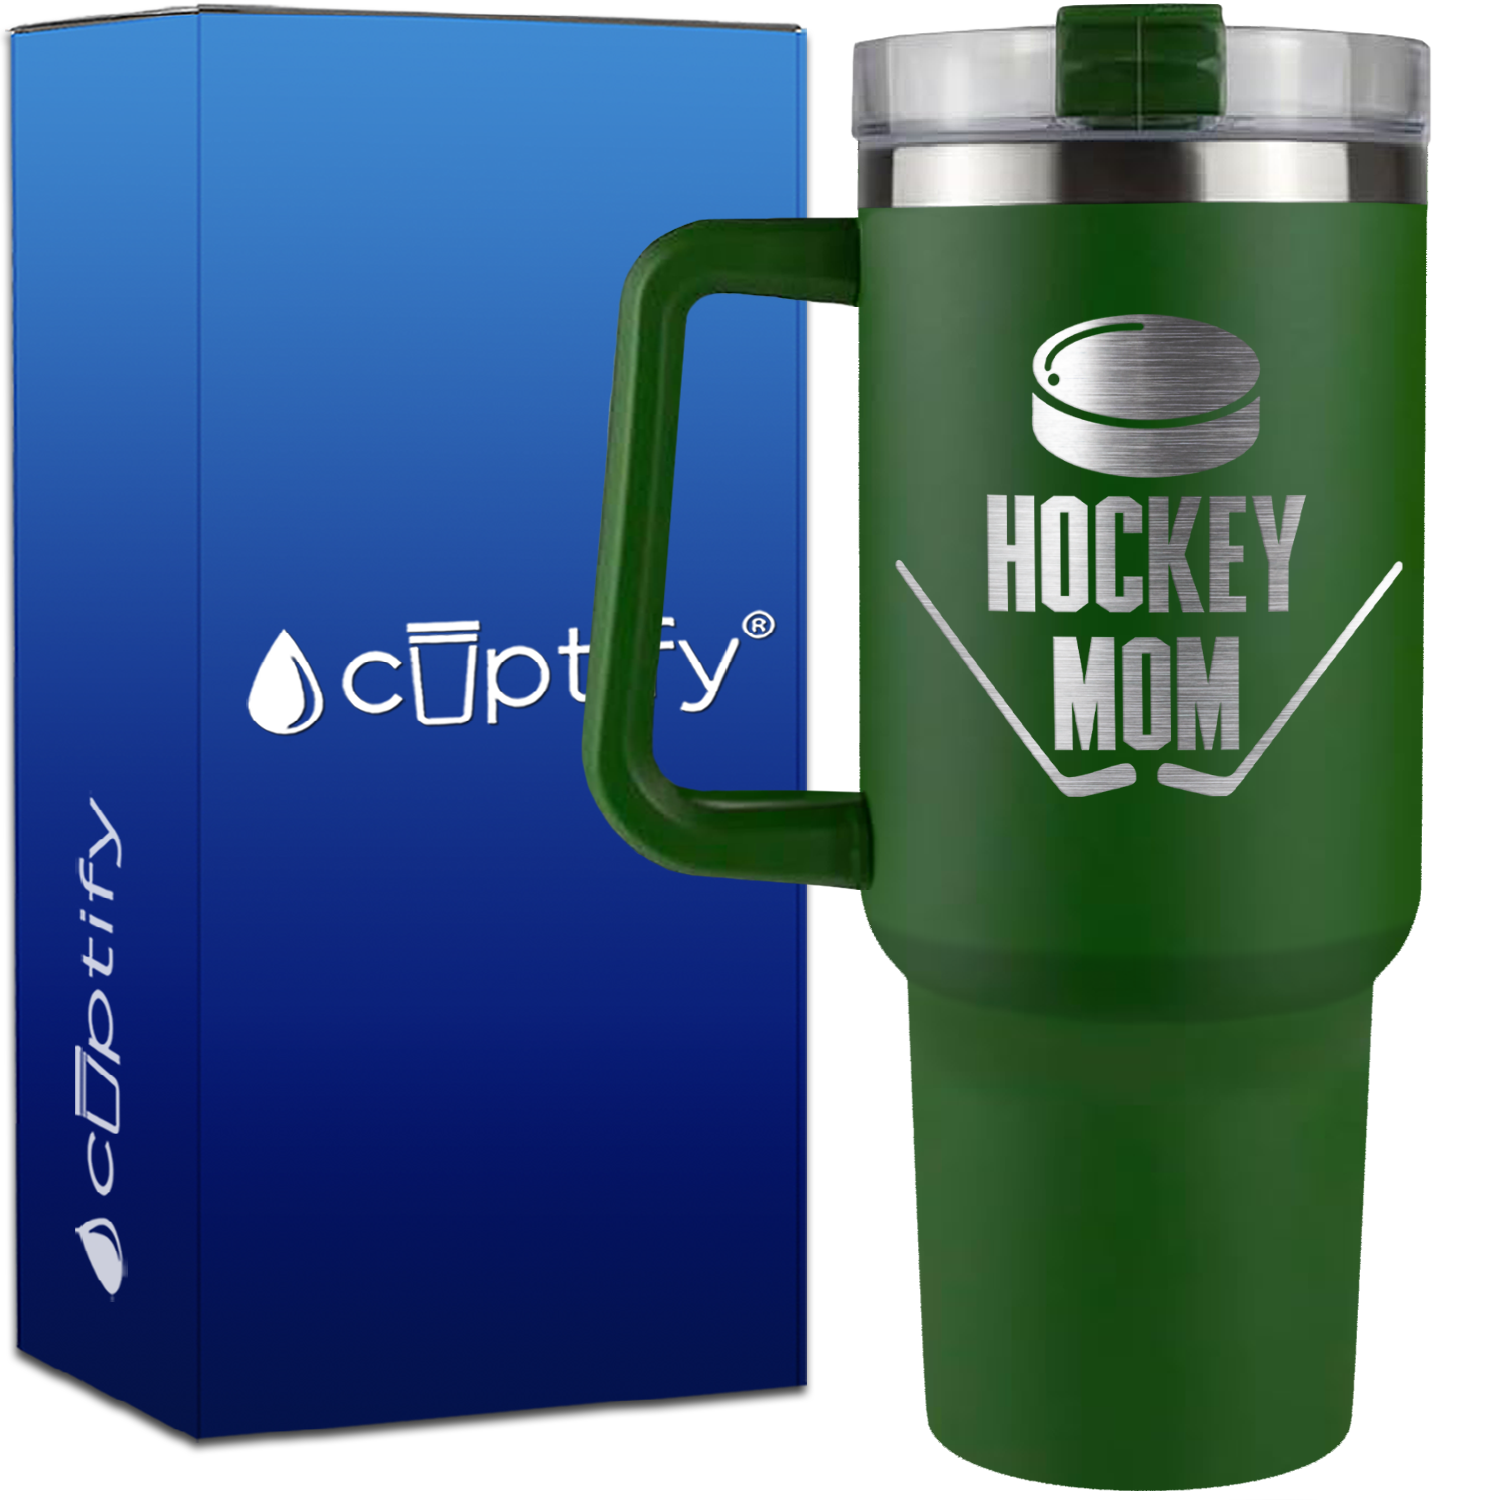 Hockey Mom on 40oz Hockey Traveler Mug